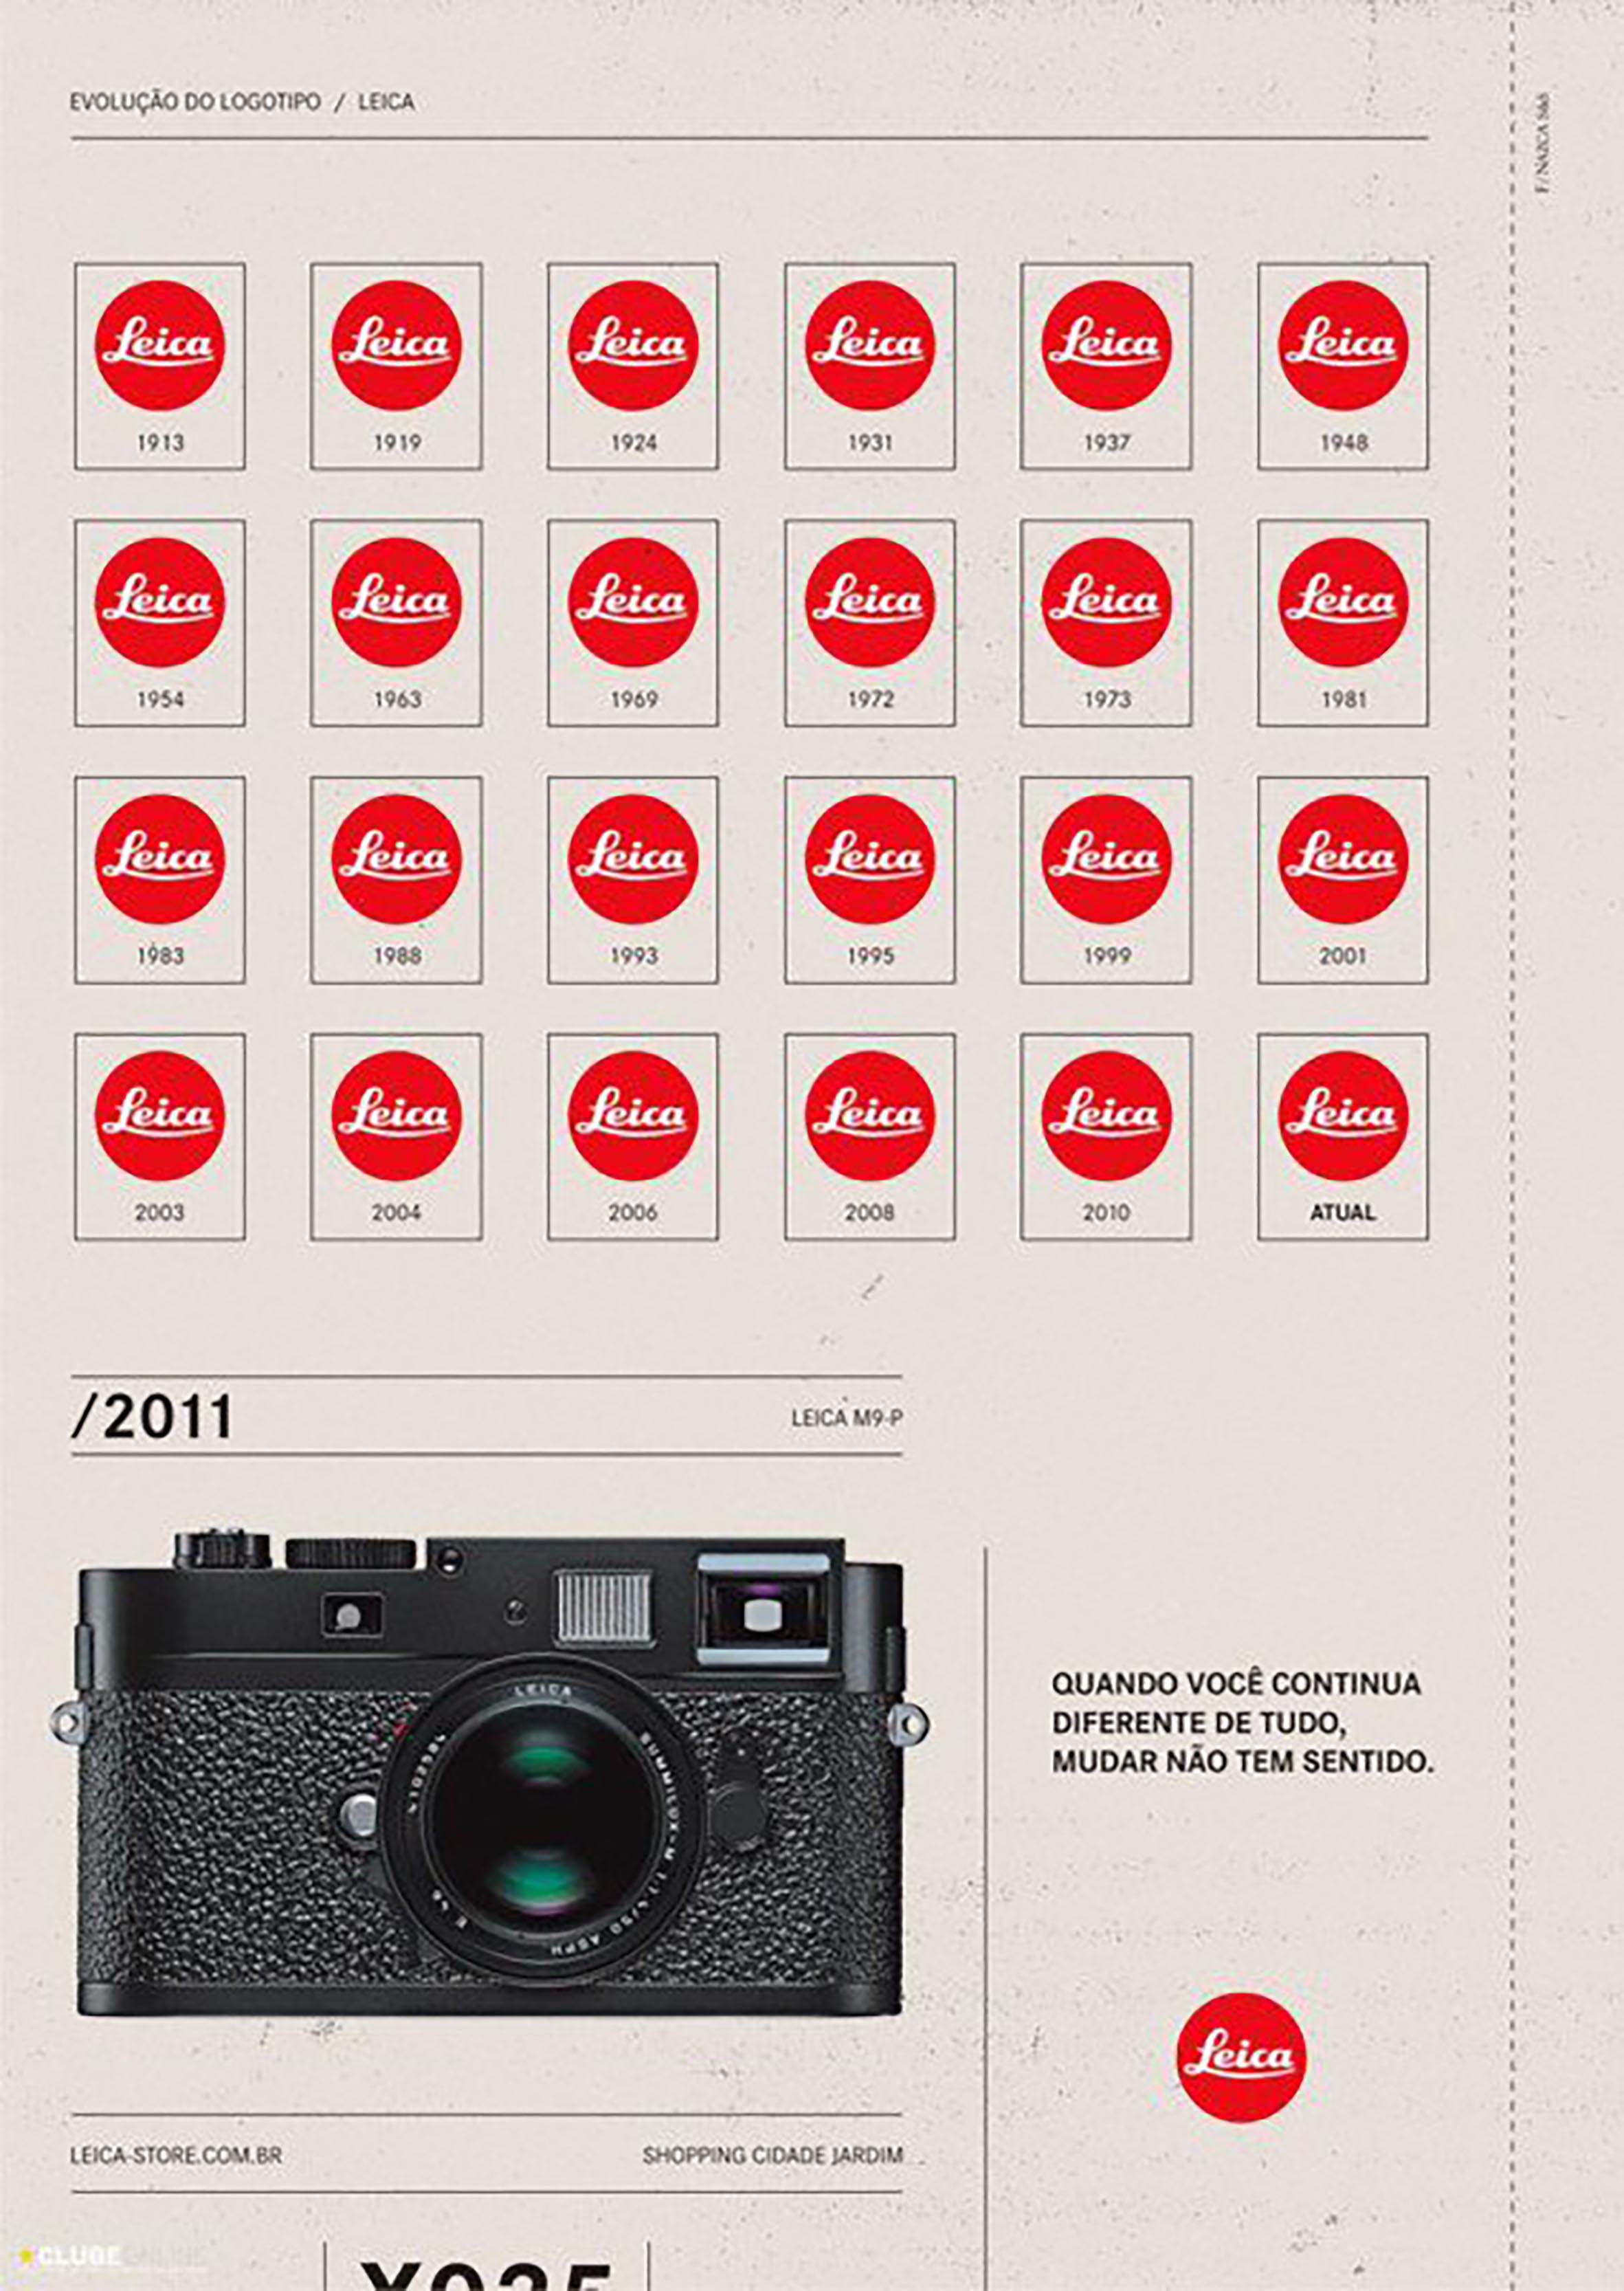 라이카 소식을 전하는 라이카 루머스(Leica Rumors)에서 재조명한 2011년 라이카 M9-P 광고. “this is how the leica logo has changed over the past 100 years”라는 제목으로 게시됐다. 100년 동안 변하지 않은 라이카 로고를 볼 수 있다.